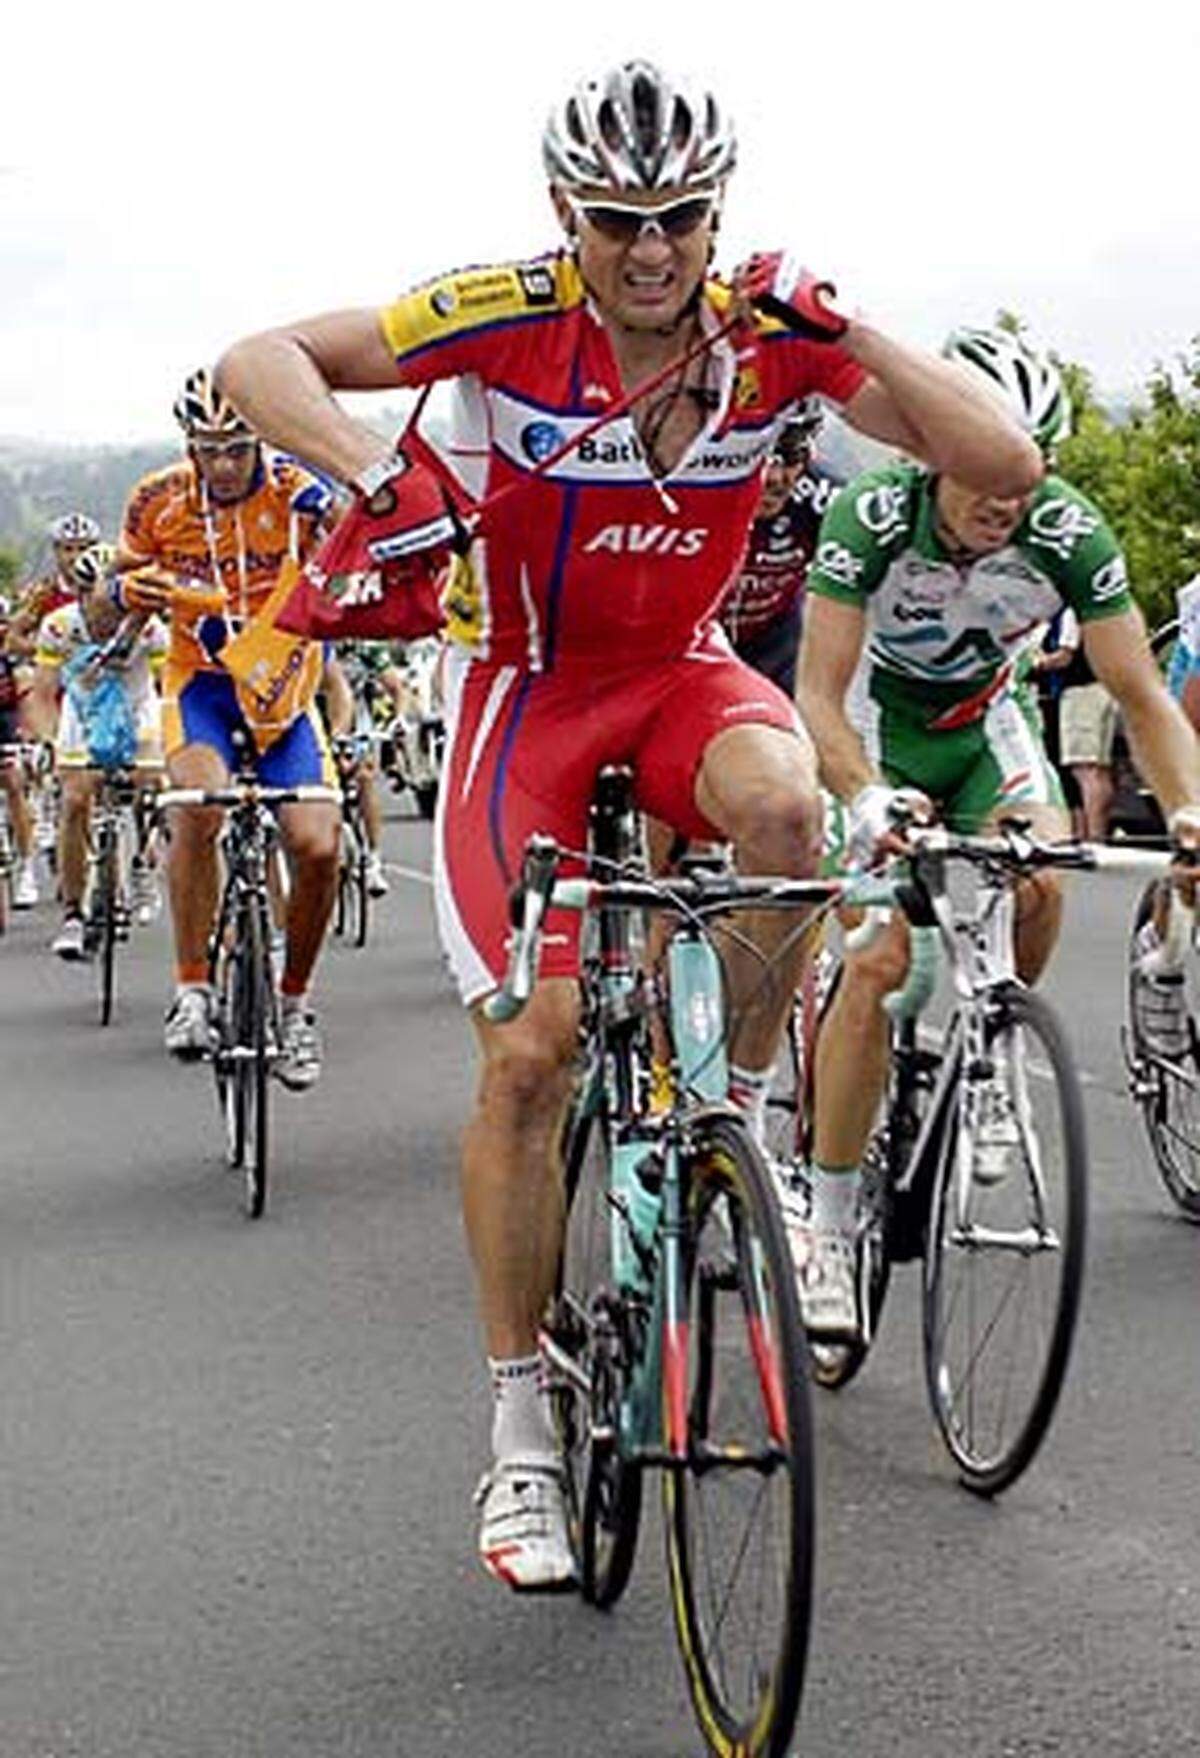 Die französische Polizei findet vor der 11. Etappe der Tour de France im Hotelzimmer des spanischen Radprofis Moises Duenas (hier bei der 7. Etappe) Nevado verbotene Substanzen. Sein Team zog ihn vom Rennen zurück. Duenas droht nach dem französischen Anti-Doping-Gesetz eine Haftstrafe von bis zu fünf Jahren.